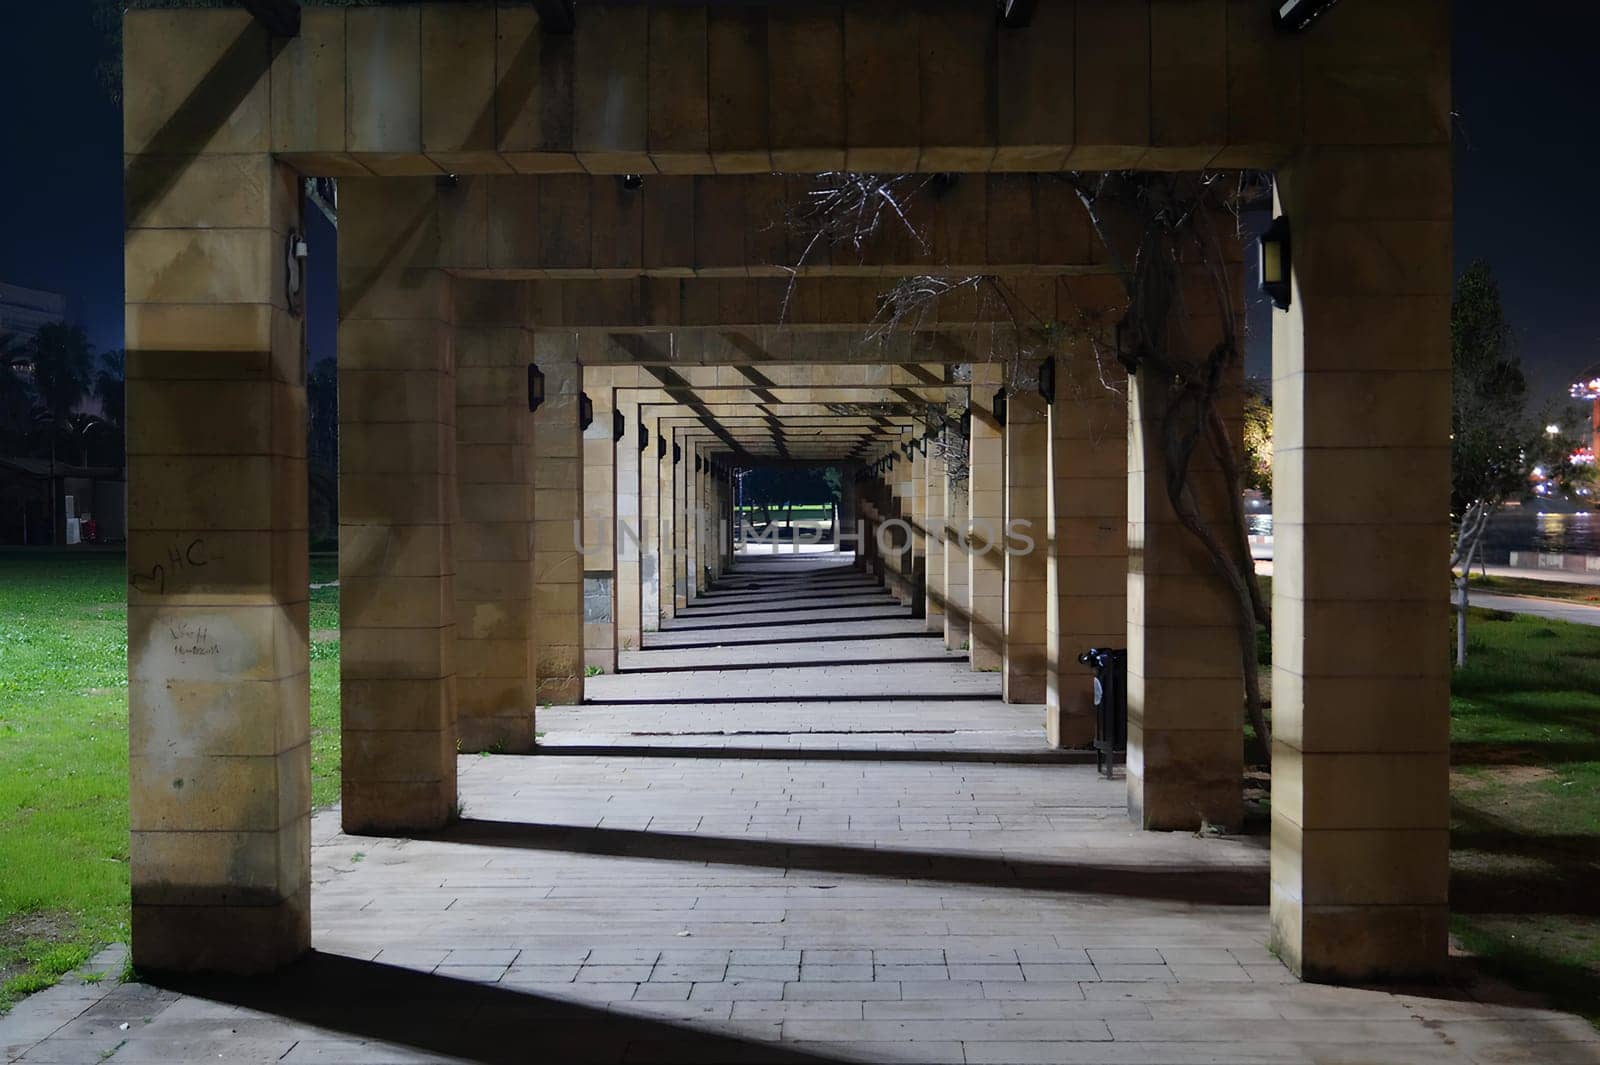 A long, empty walkway with a few lights by gadreel